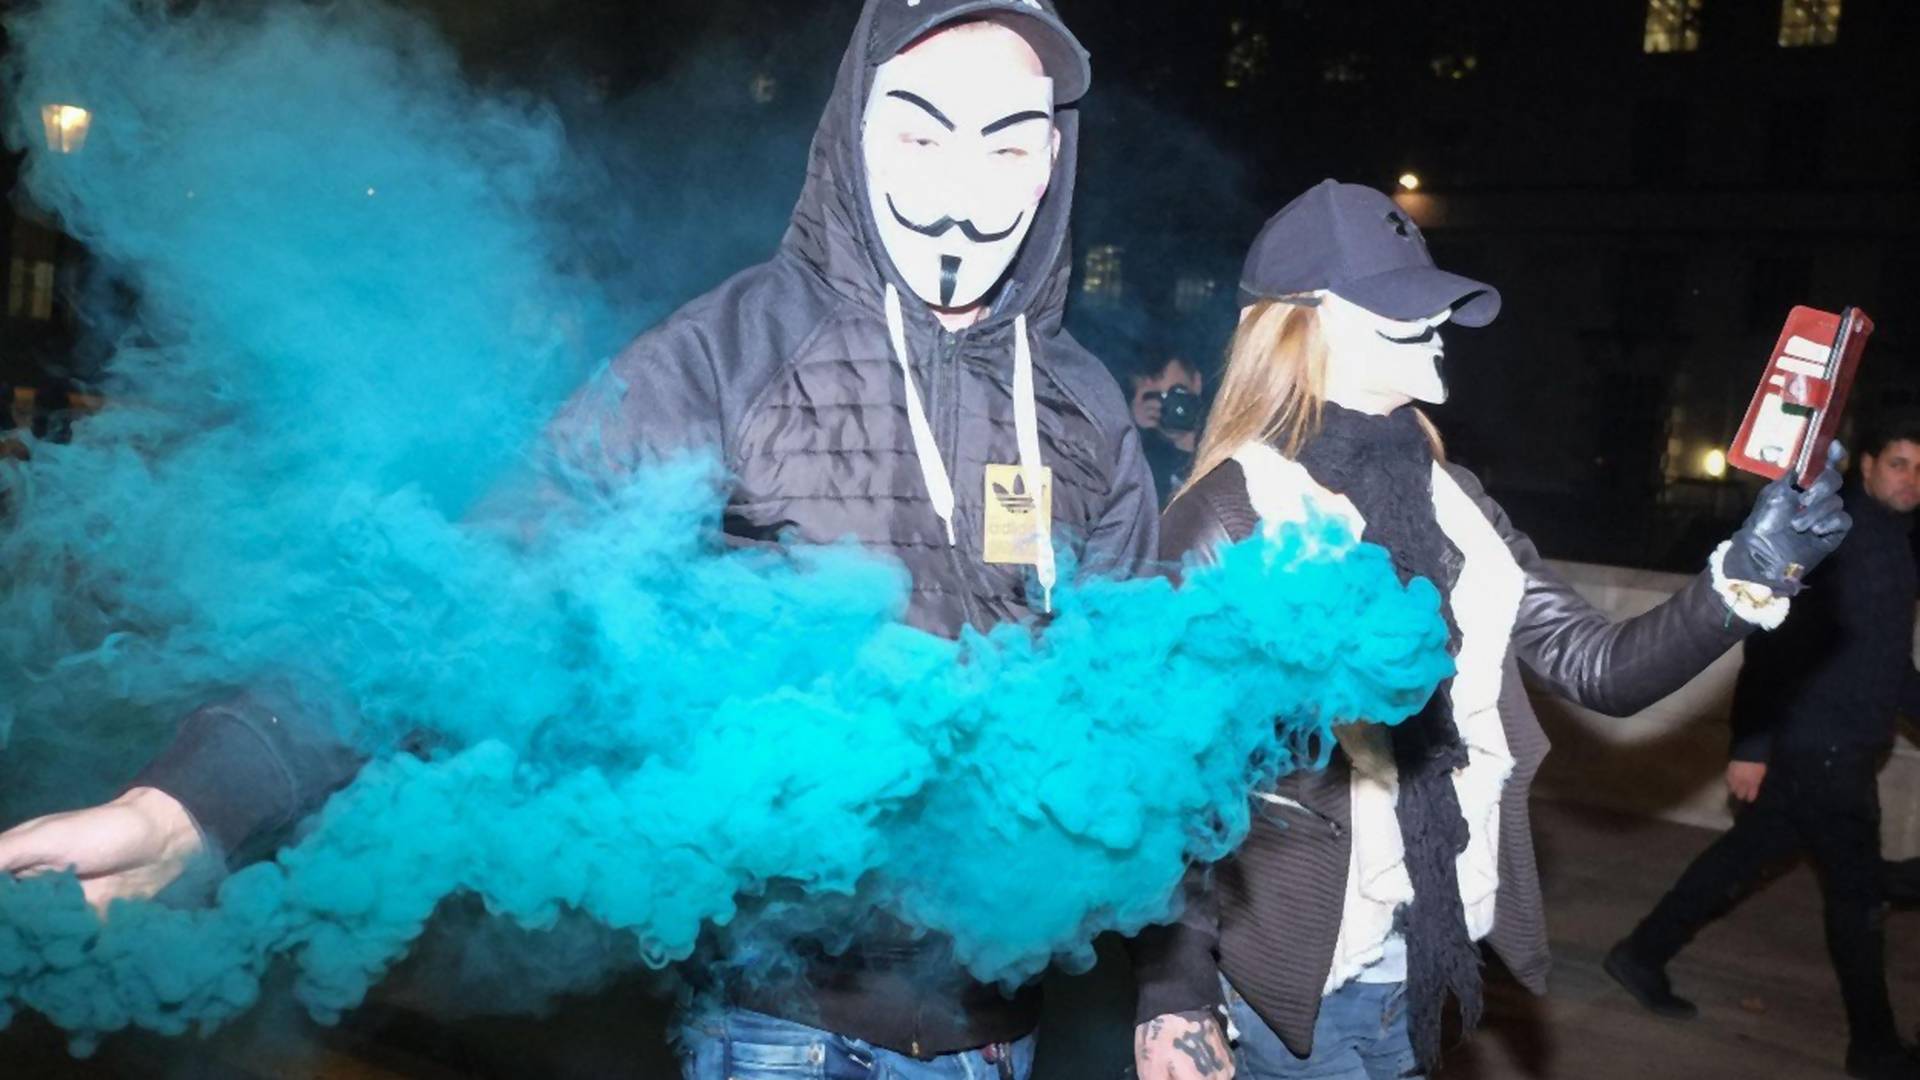 Priča o nepravdi koja se krije iza maske Anonimusa